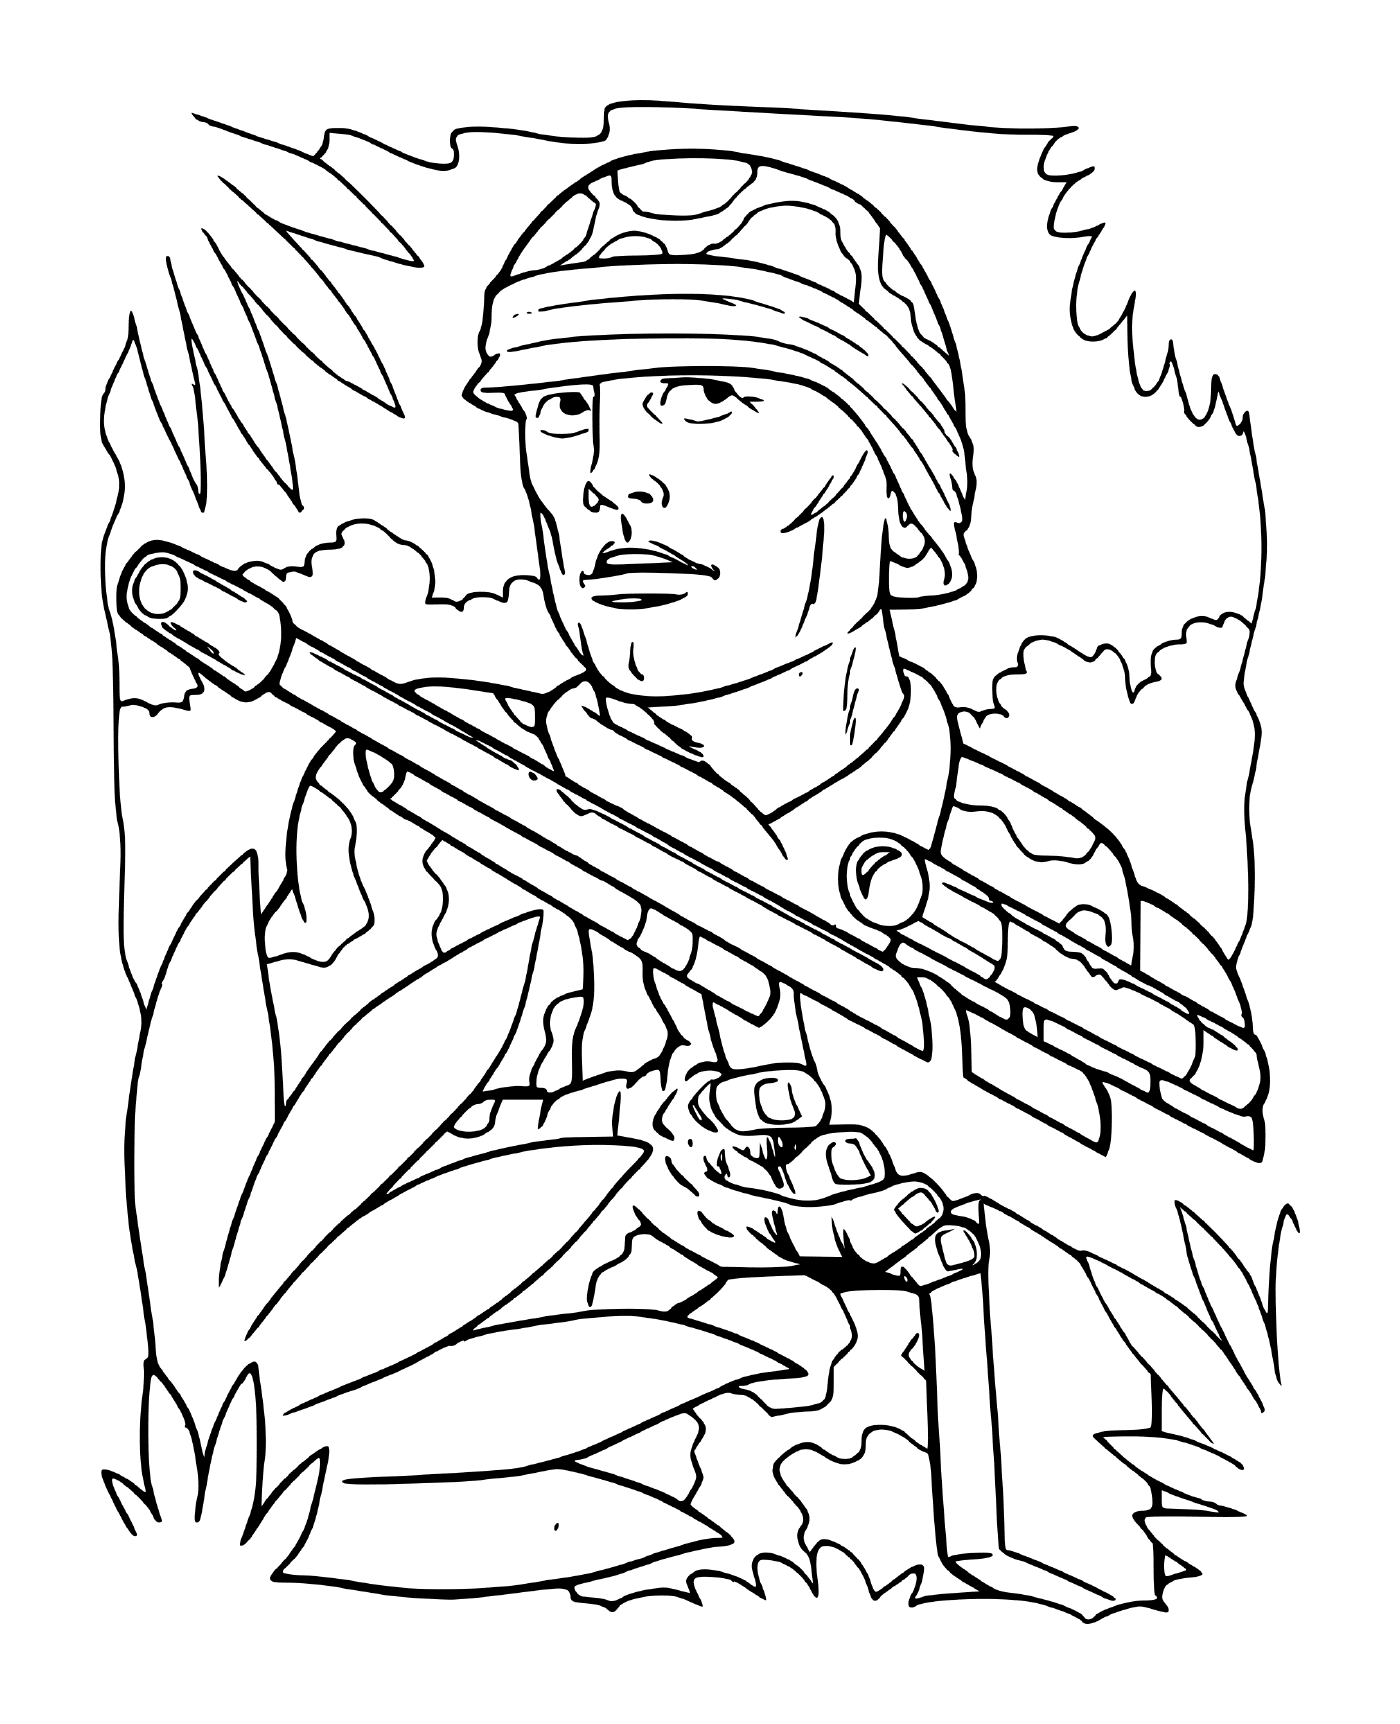  Солдат войны в лесу: солдат, держащий винтовку в лесу 